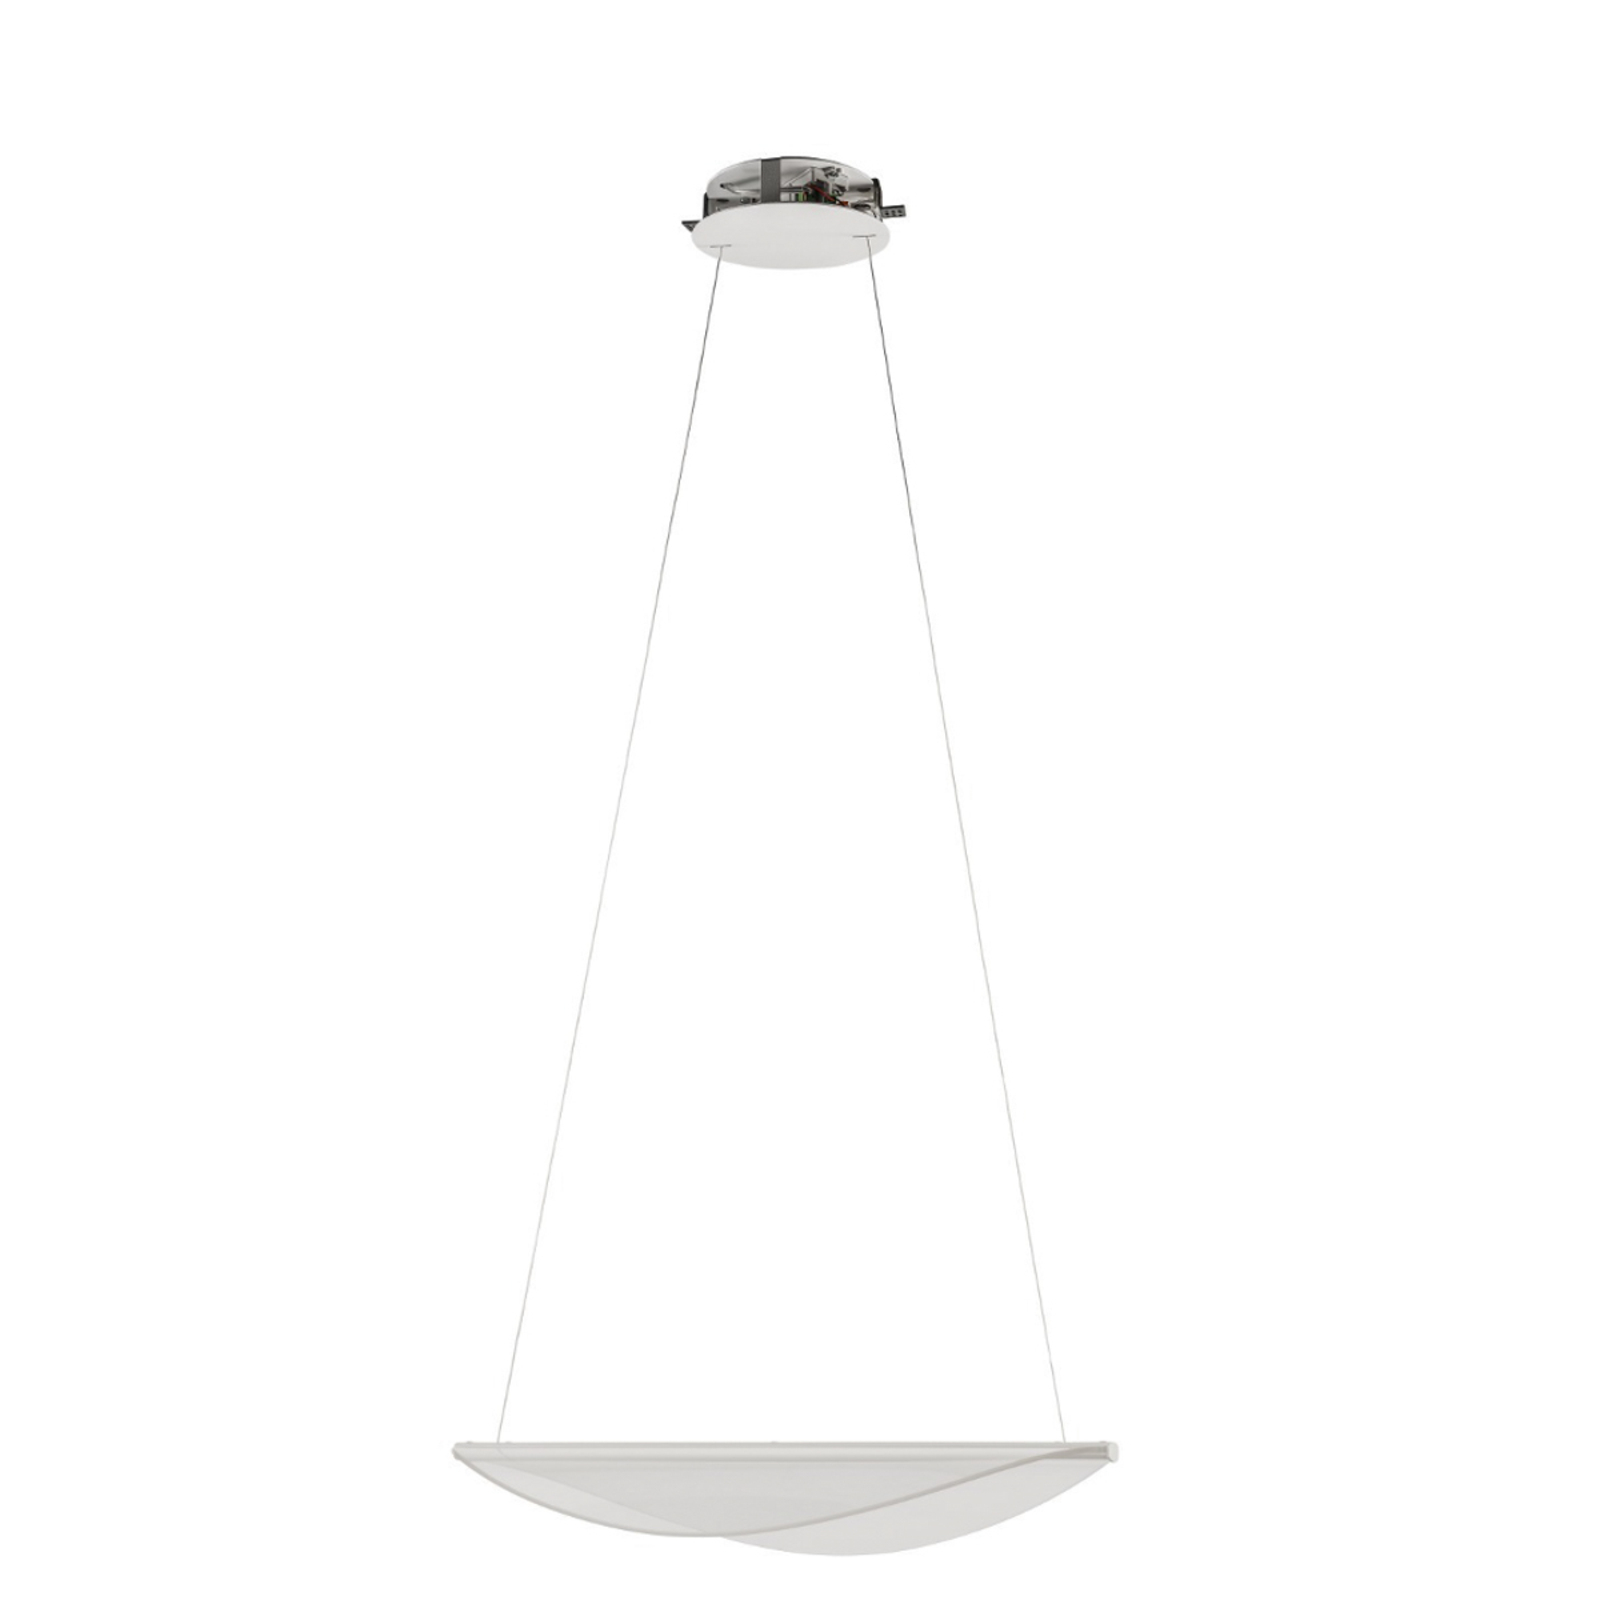 Stilnovo Diphy lampa wisząca LED biała, 53,6 cm